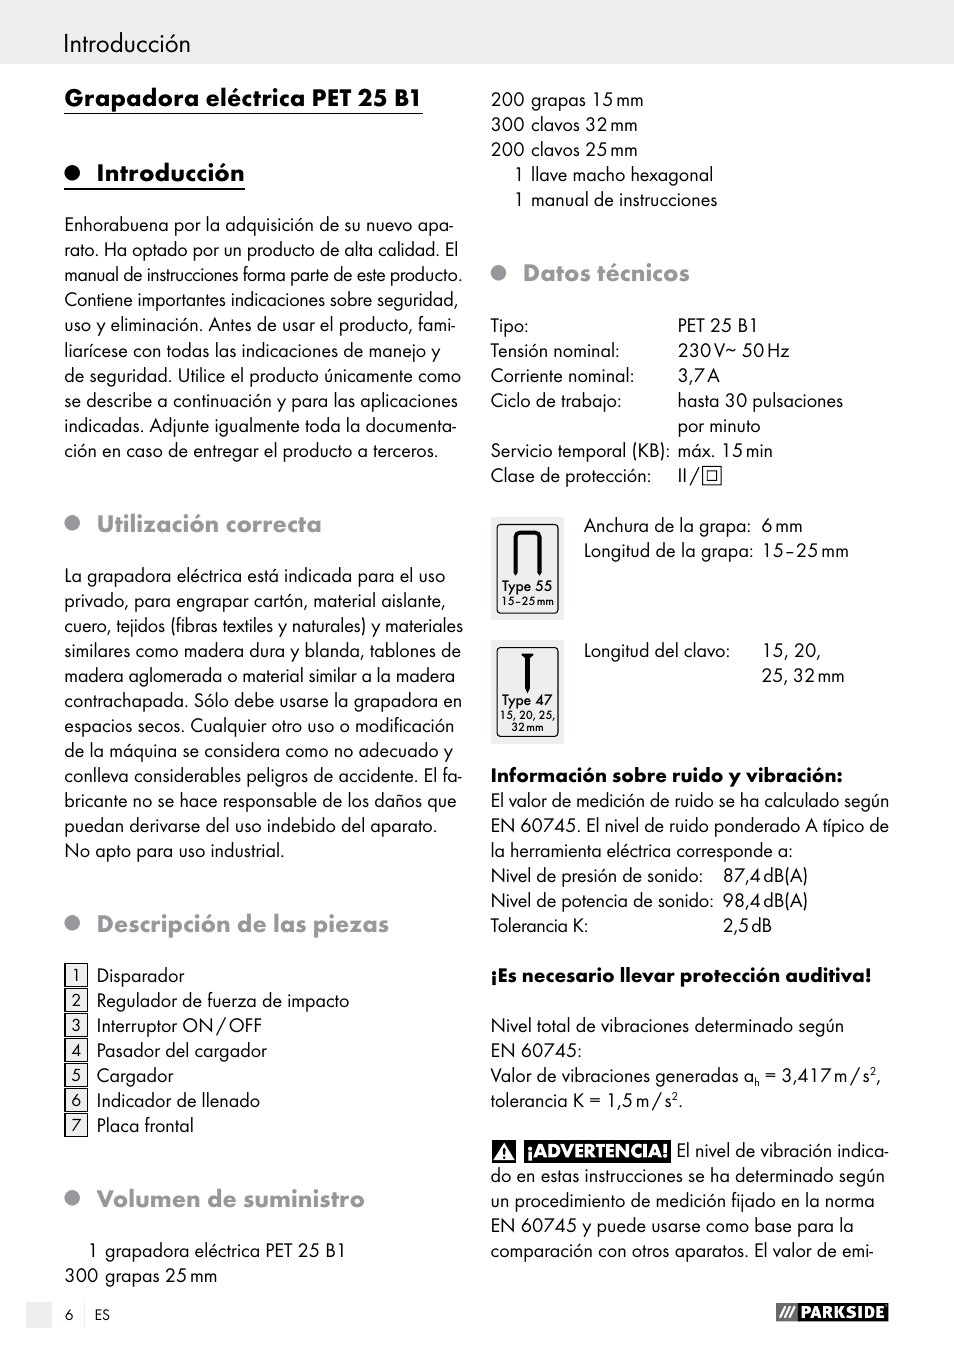 Grapadora eléctrica pet 25 b1, Introducción, Utilización correcta | Parkside  PET 25 B1 User Manual | Page 6 / 45